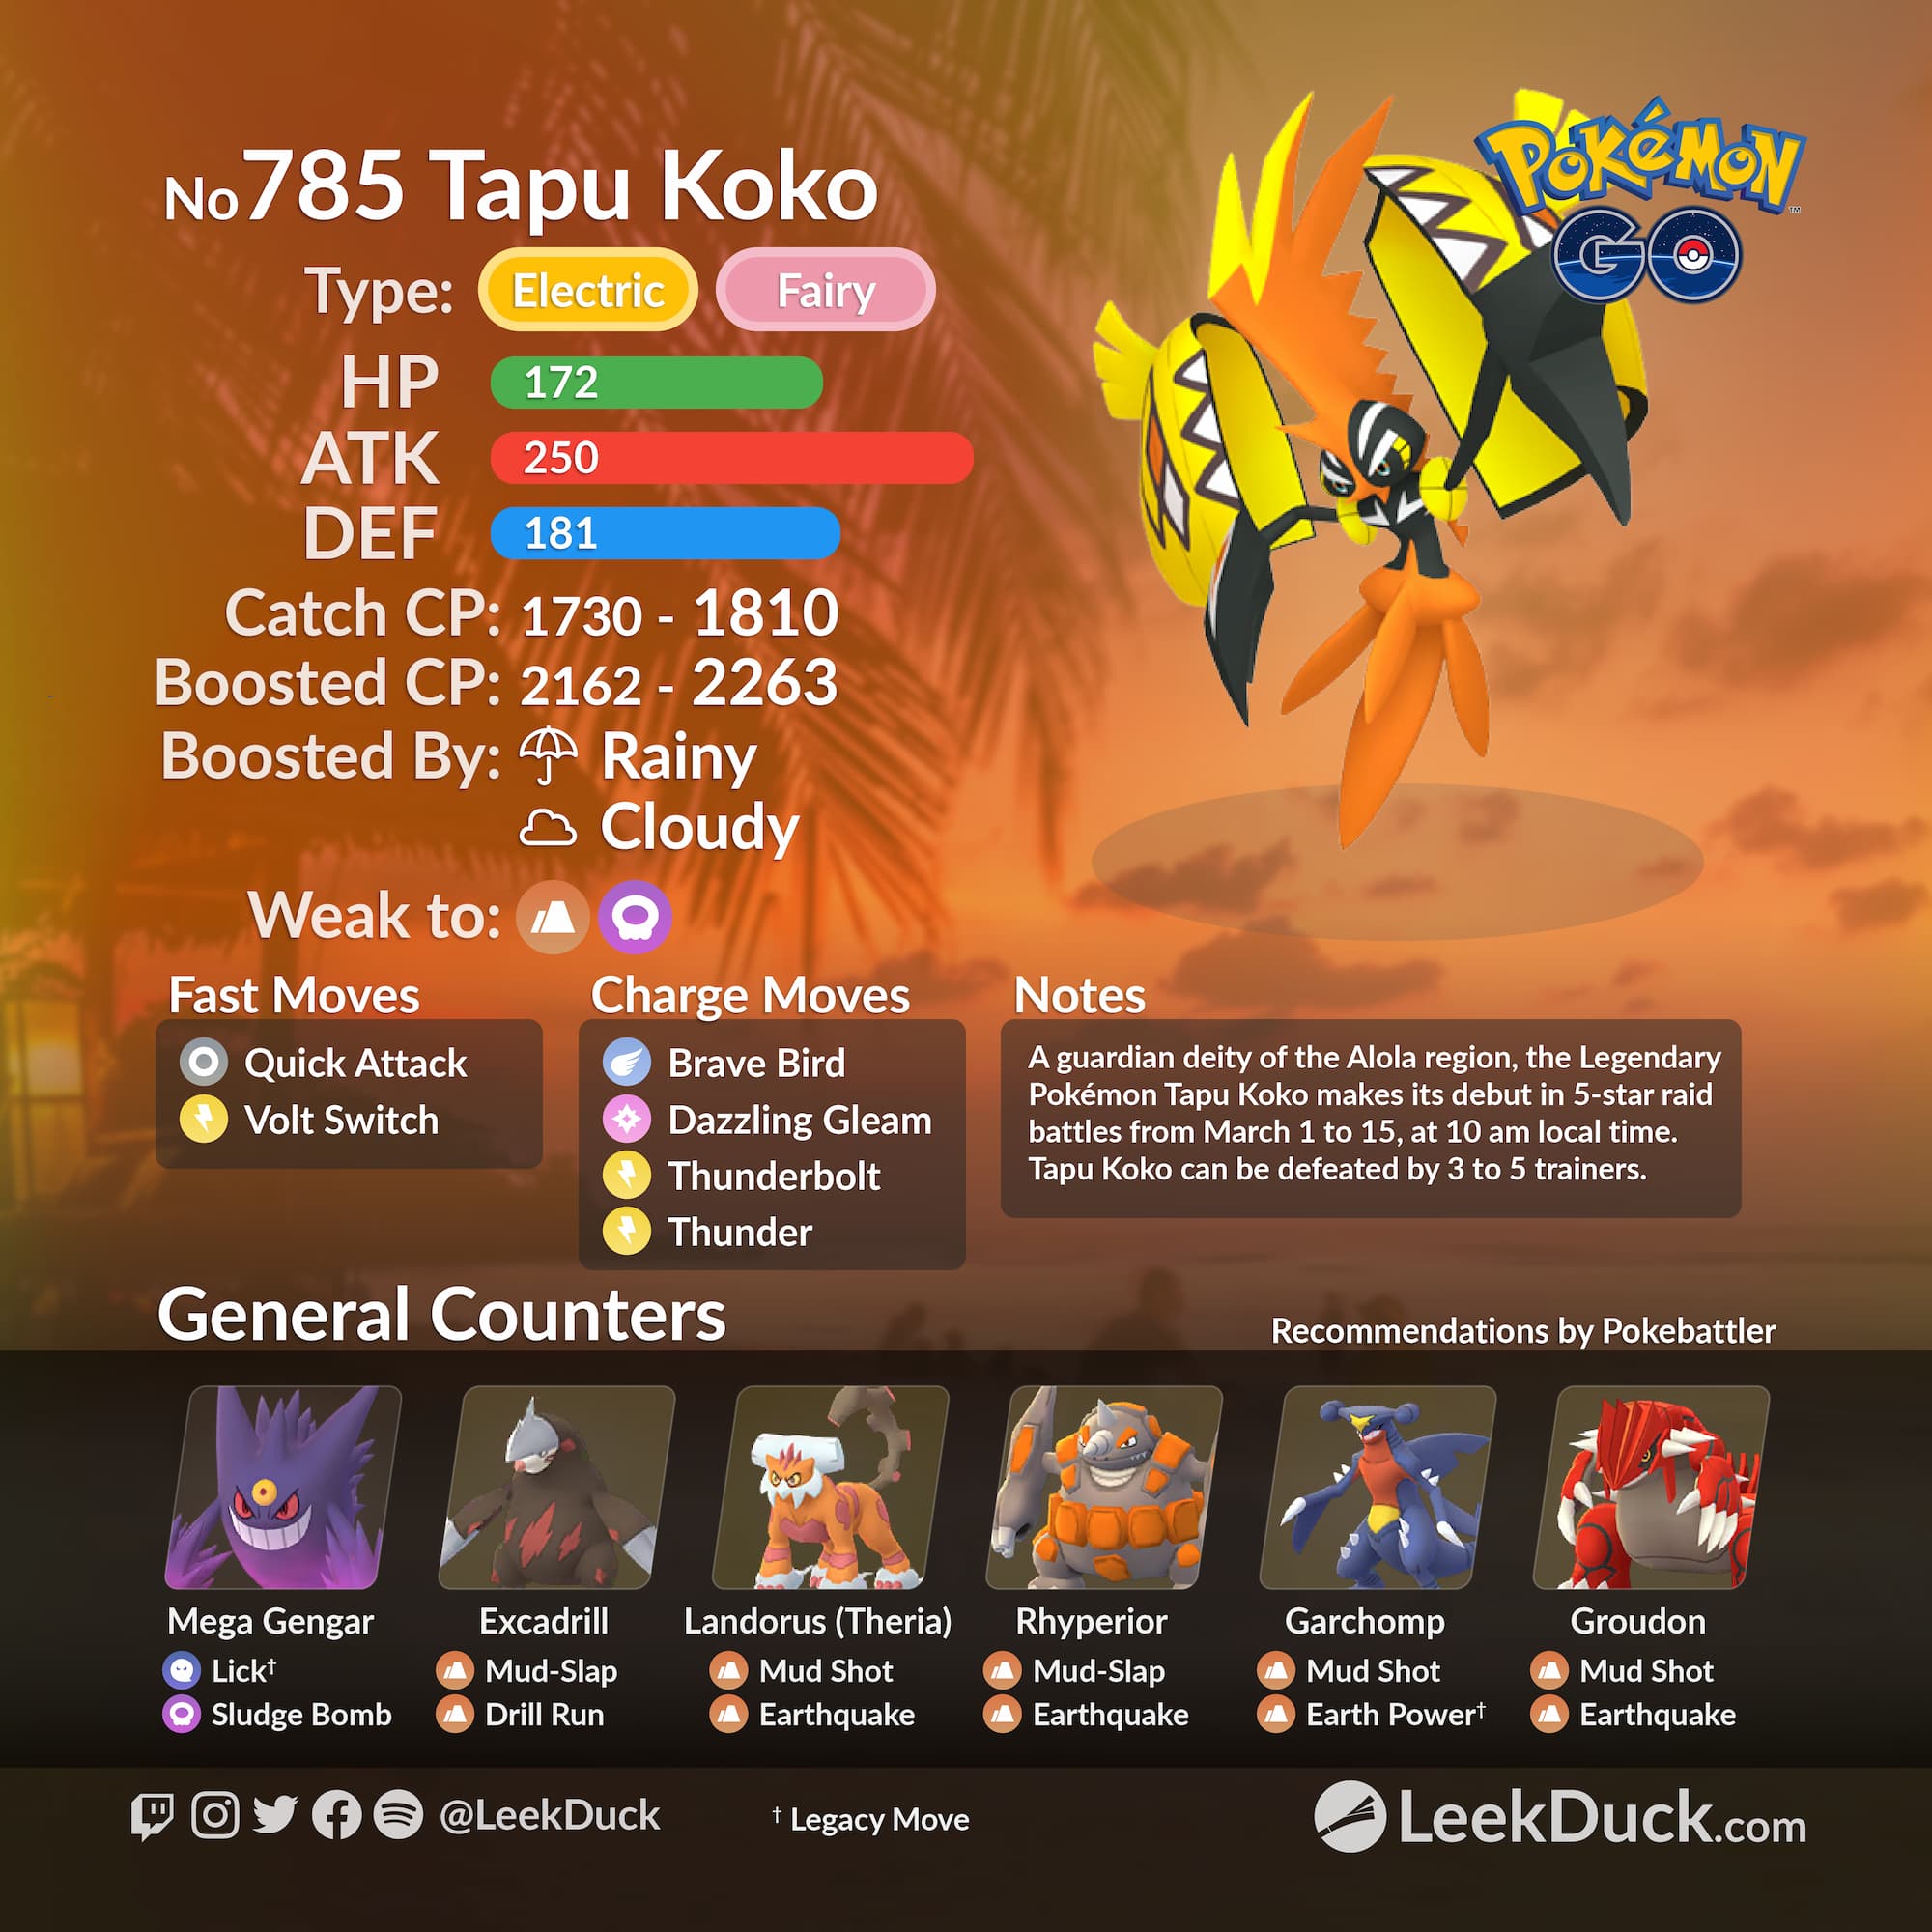 Tapu Koko Raid Guide